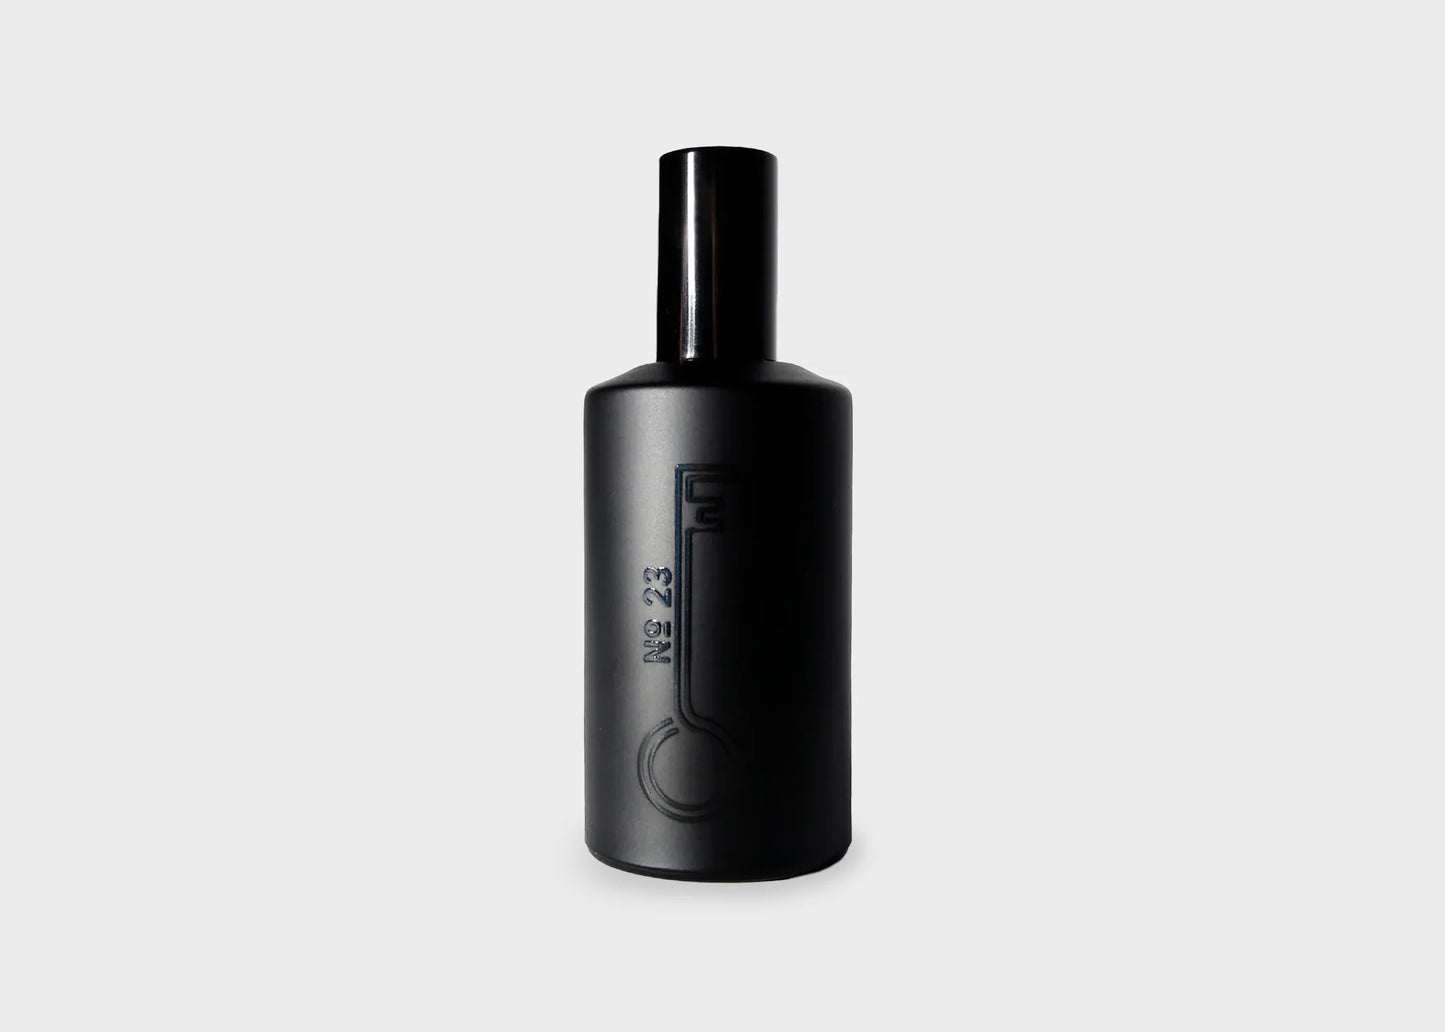 Icelandic Fischersund No. 23 large black perfume bottle